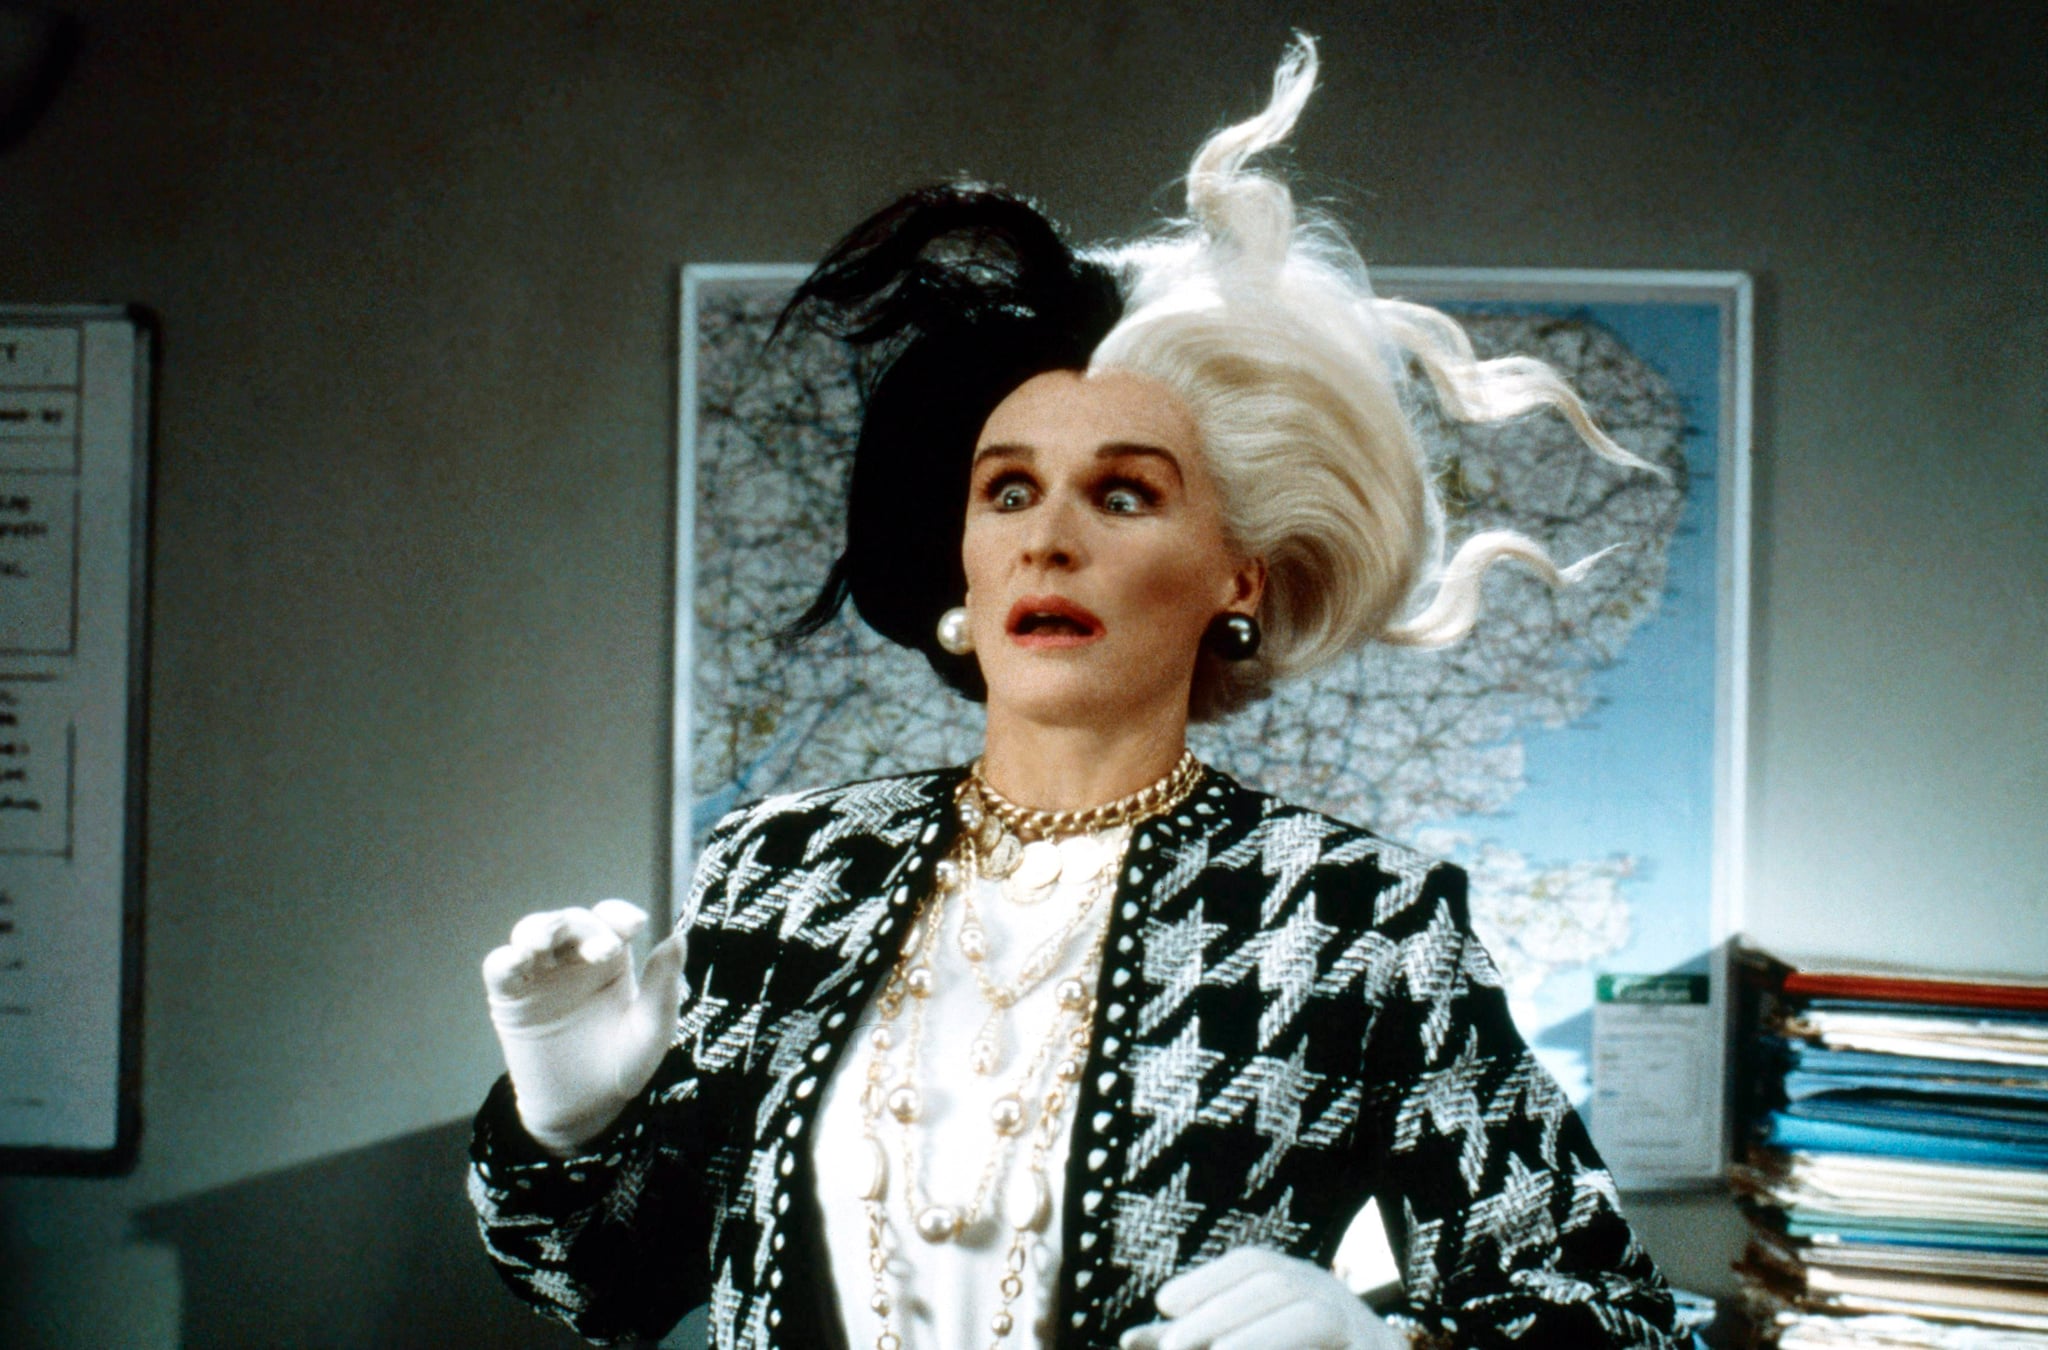 Nhan sắc 4 ác nữ Cruella trên phim: Mỹ nữ Emma Stone liệu có cửa đọ với bà hoàng 8 lần được đề cử Oscar? - Ảnh 2.